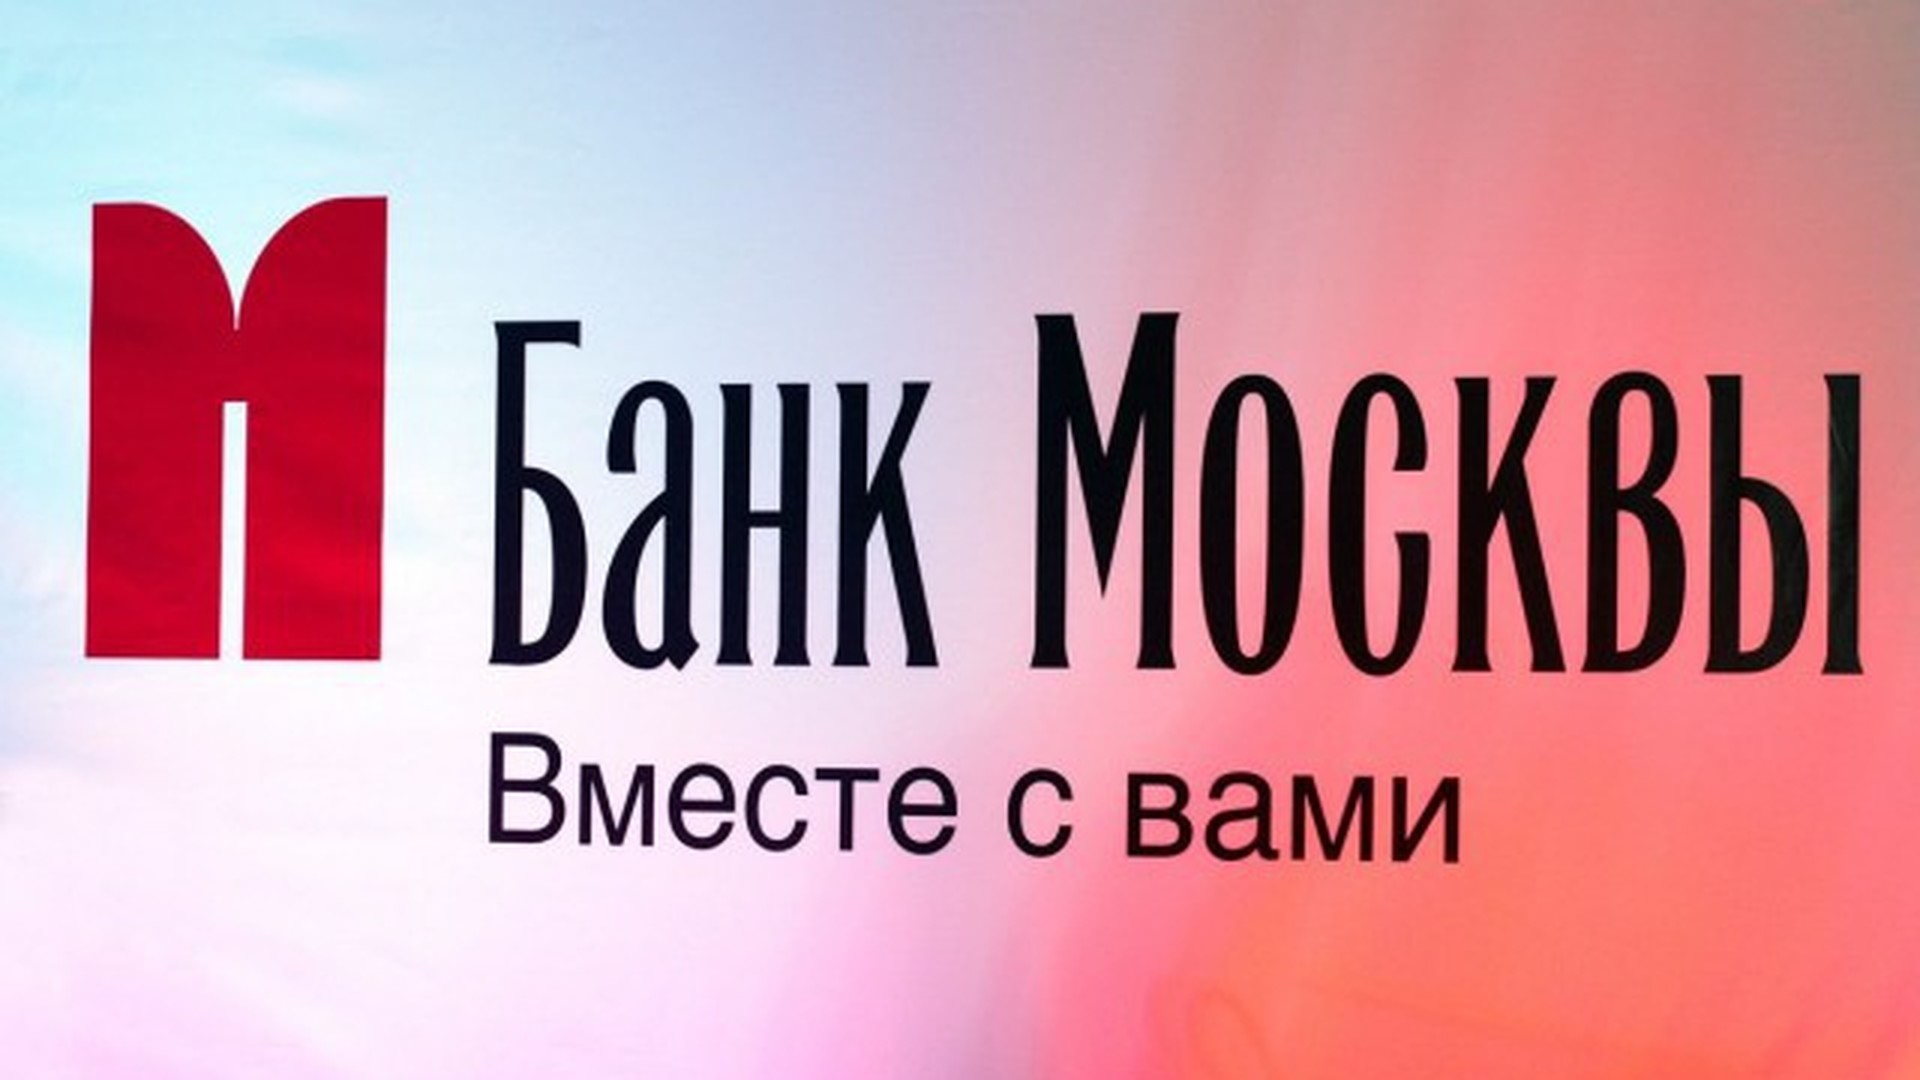 Банк москвы условия. Банк Москвы вместе с вами. Банк Москвы карта. Банк Москвы фон. Банк Москвы реклама.